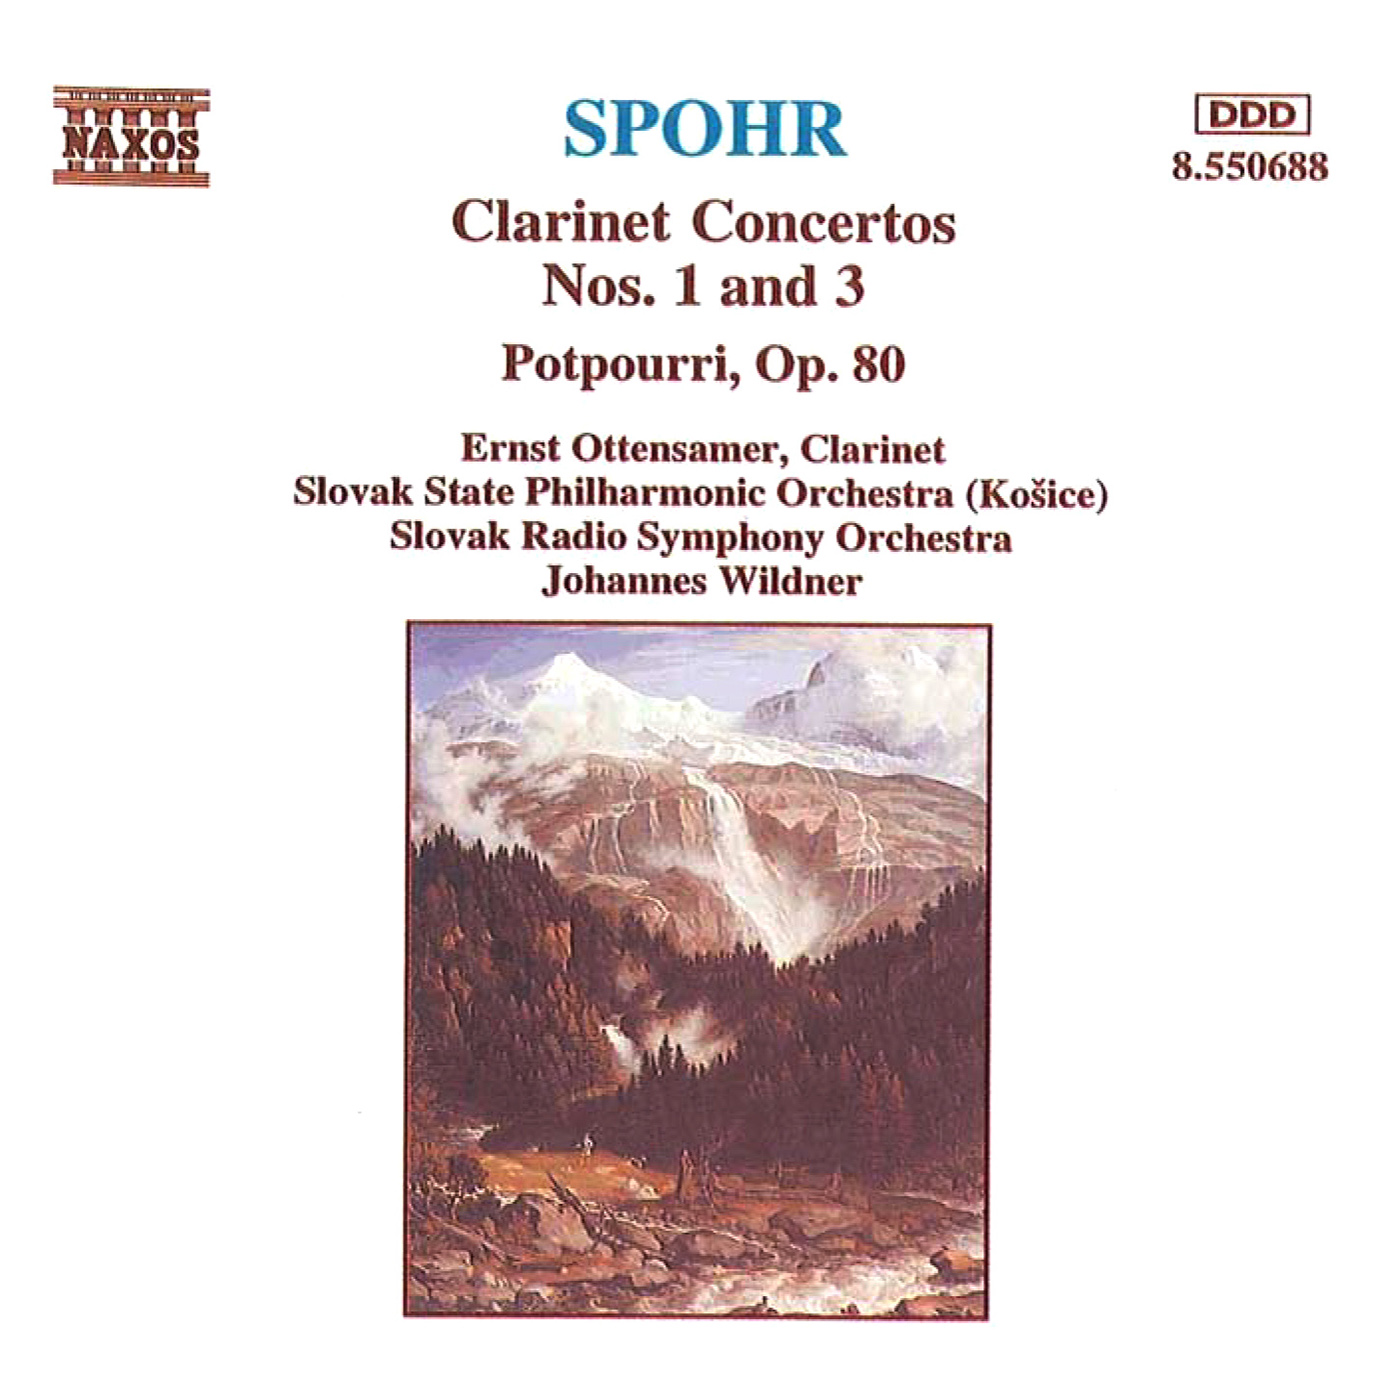 Clarinet Concerto No. 3 in F Minor, WoO 19: I. Allegro moderato